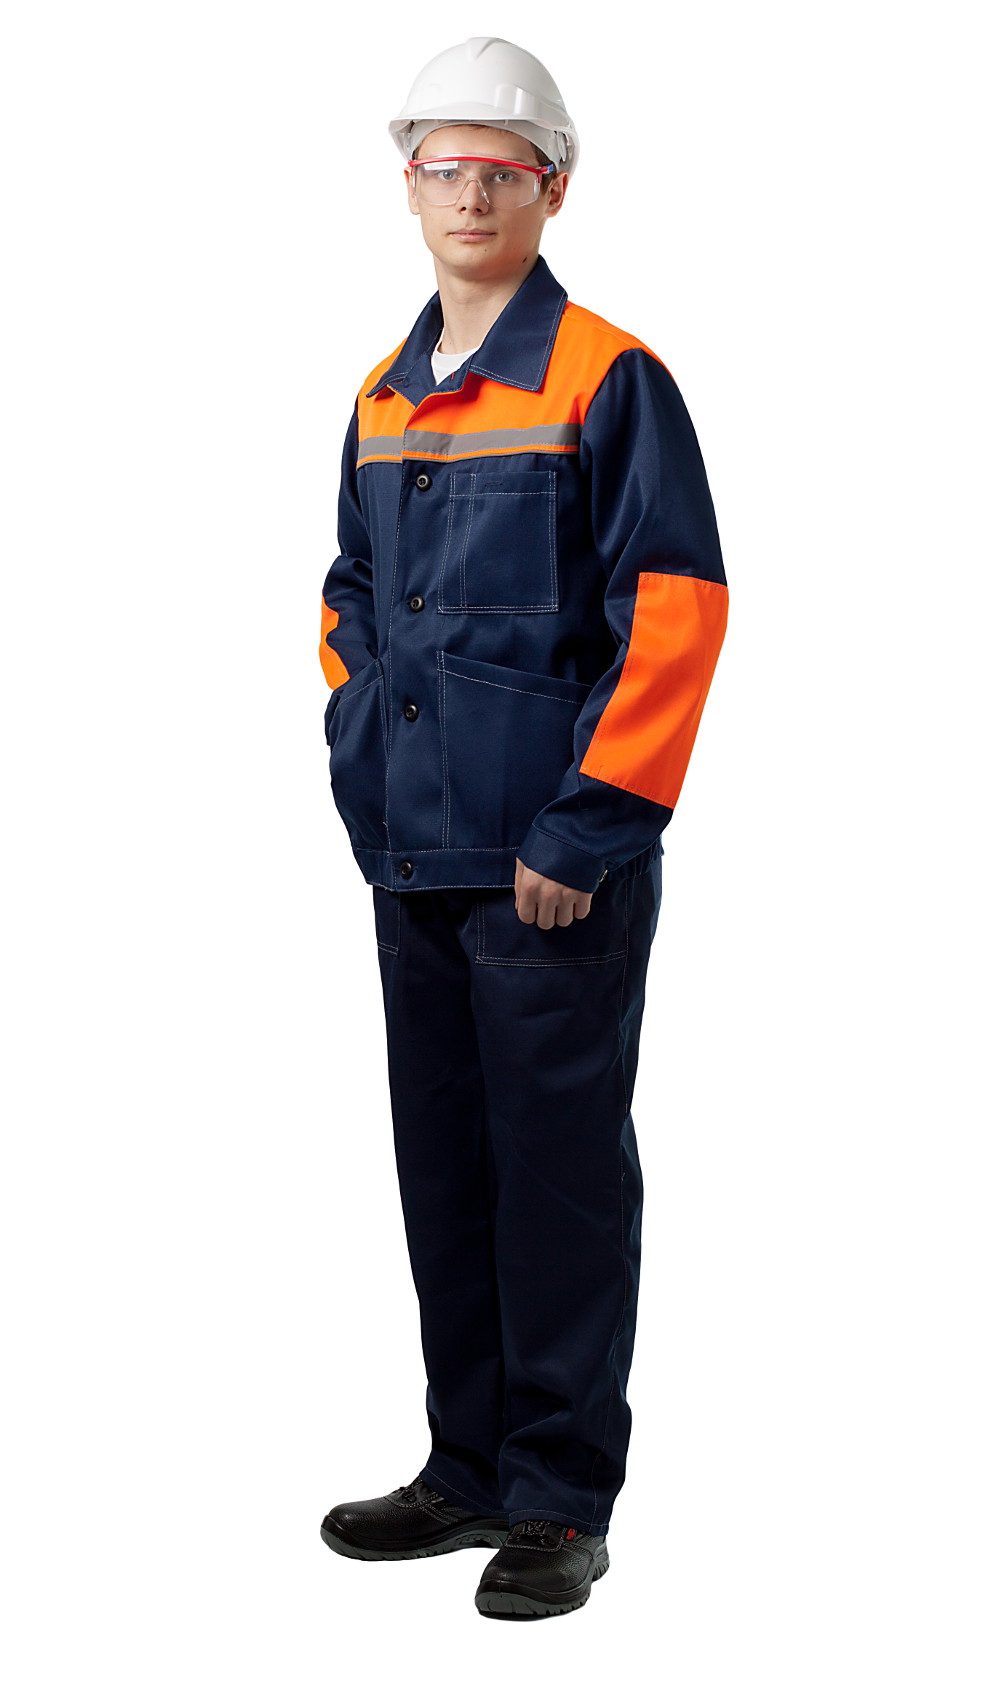 ДНК 109 Костюм «Конвейер» (куртка и полукомбинезон), цвет синий + оранжевый от интернет магазина dnk-kmf.ru, приобрести днк 109 костюм «конвейер» (куртка и полукомбинезон), цвет синий + оранжевый. Фото �2